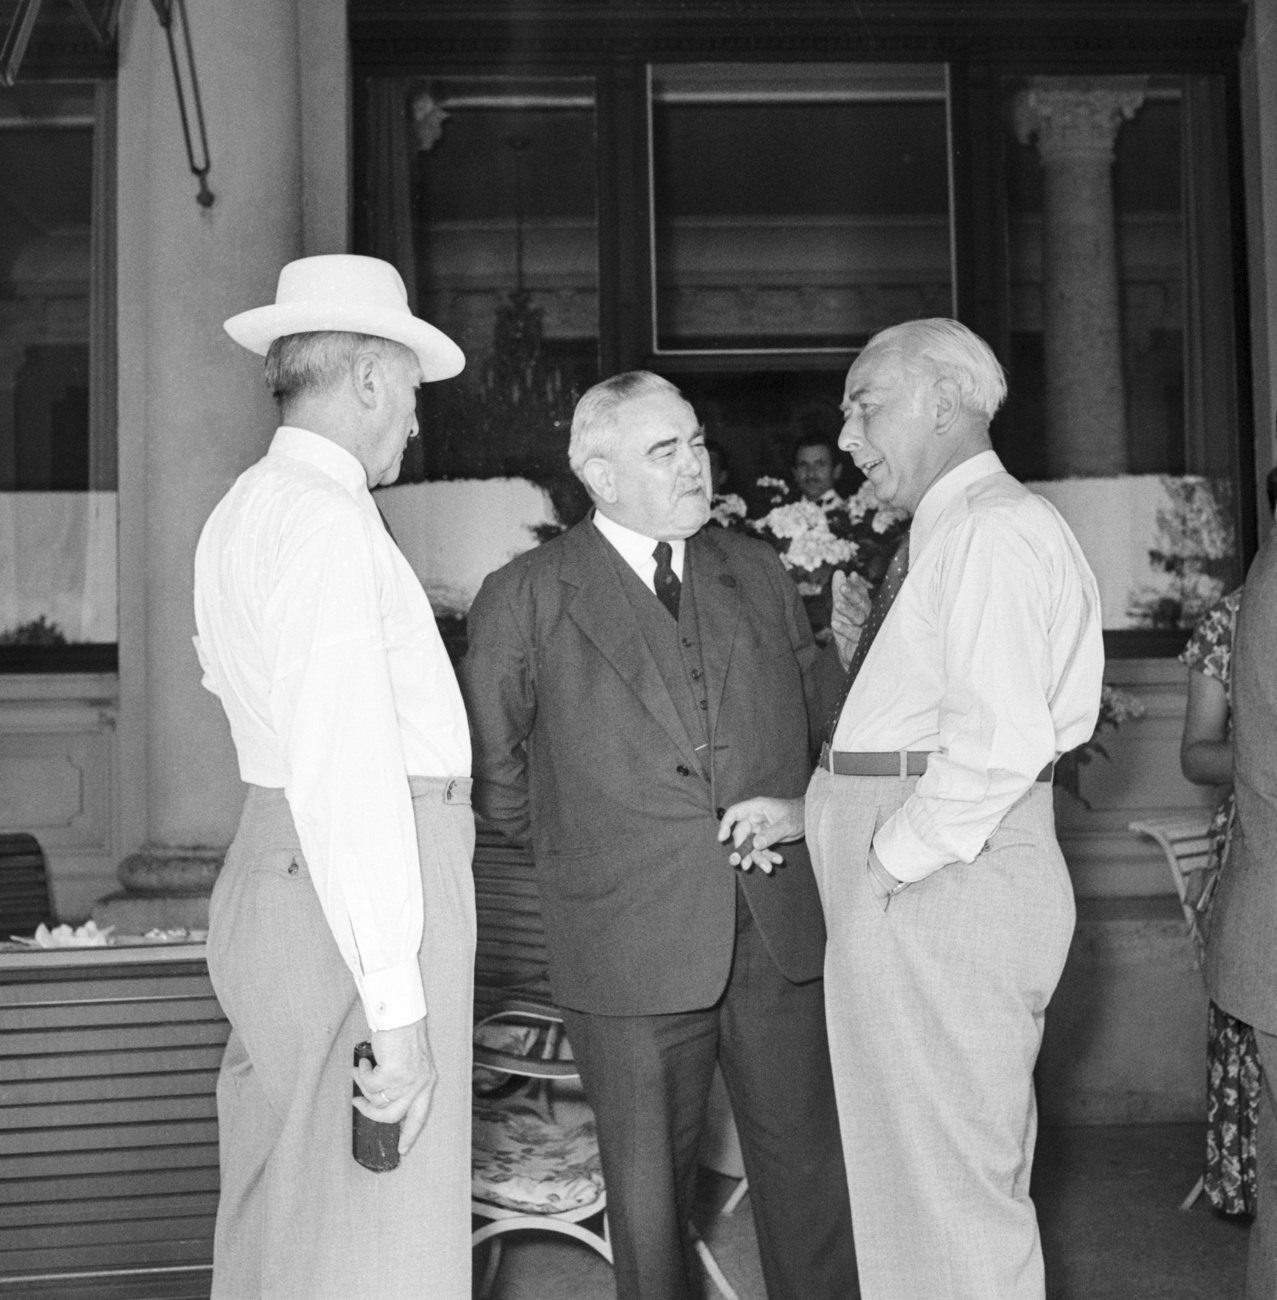 Теодор Хойс (1884-1963) (справа), первый президент Федеративной Республики Германия, навещает канцлера Германии в Бюргенштоке (кантон Нидвальден, Швейцария), находившегося тут на лечении, в июле 1950 года. На фото также изображен директор отеля Фридрих Фрей-Фуэрст (в центре).